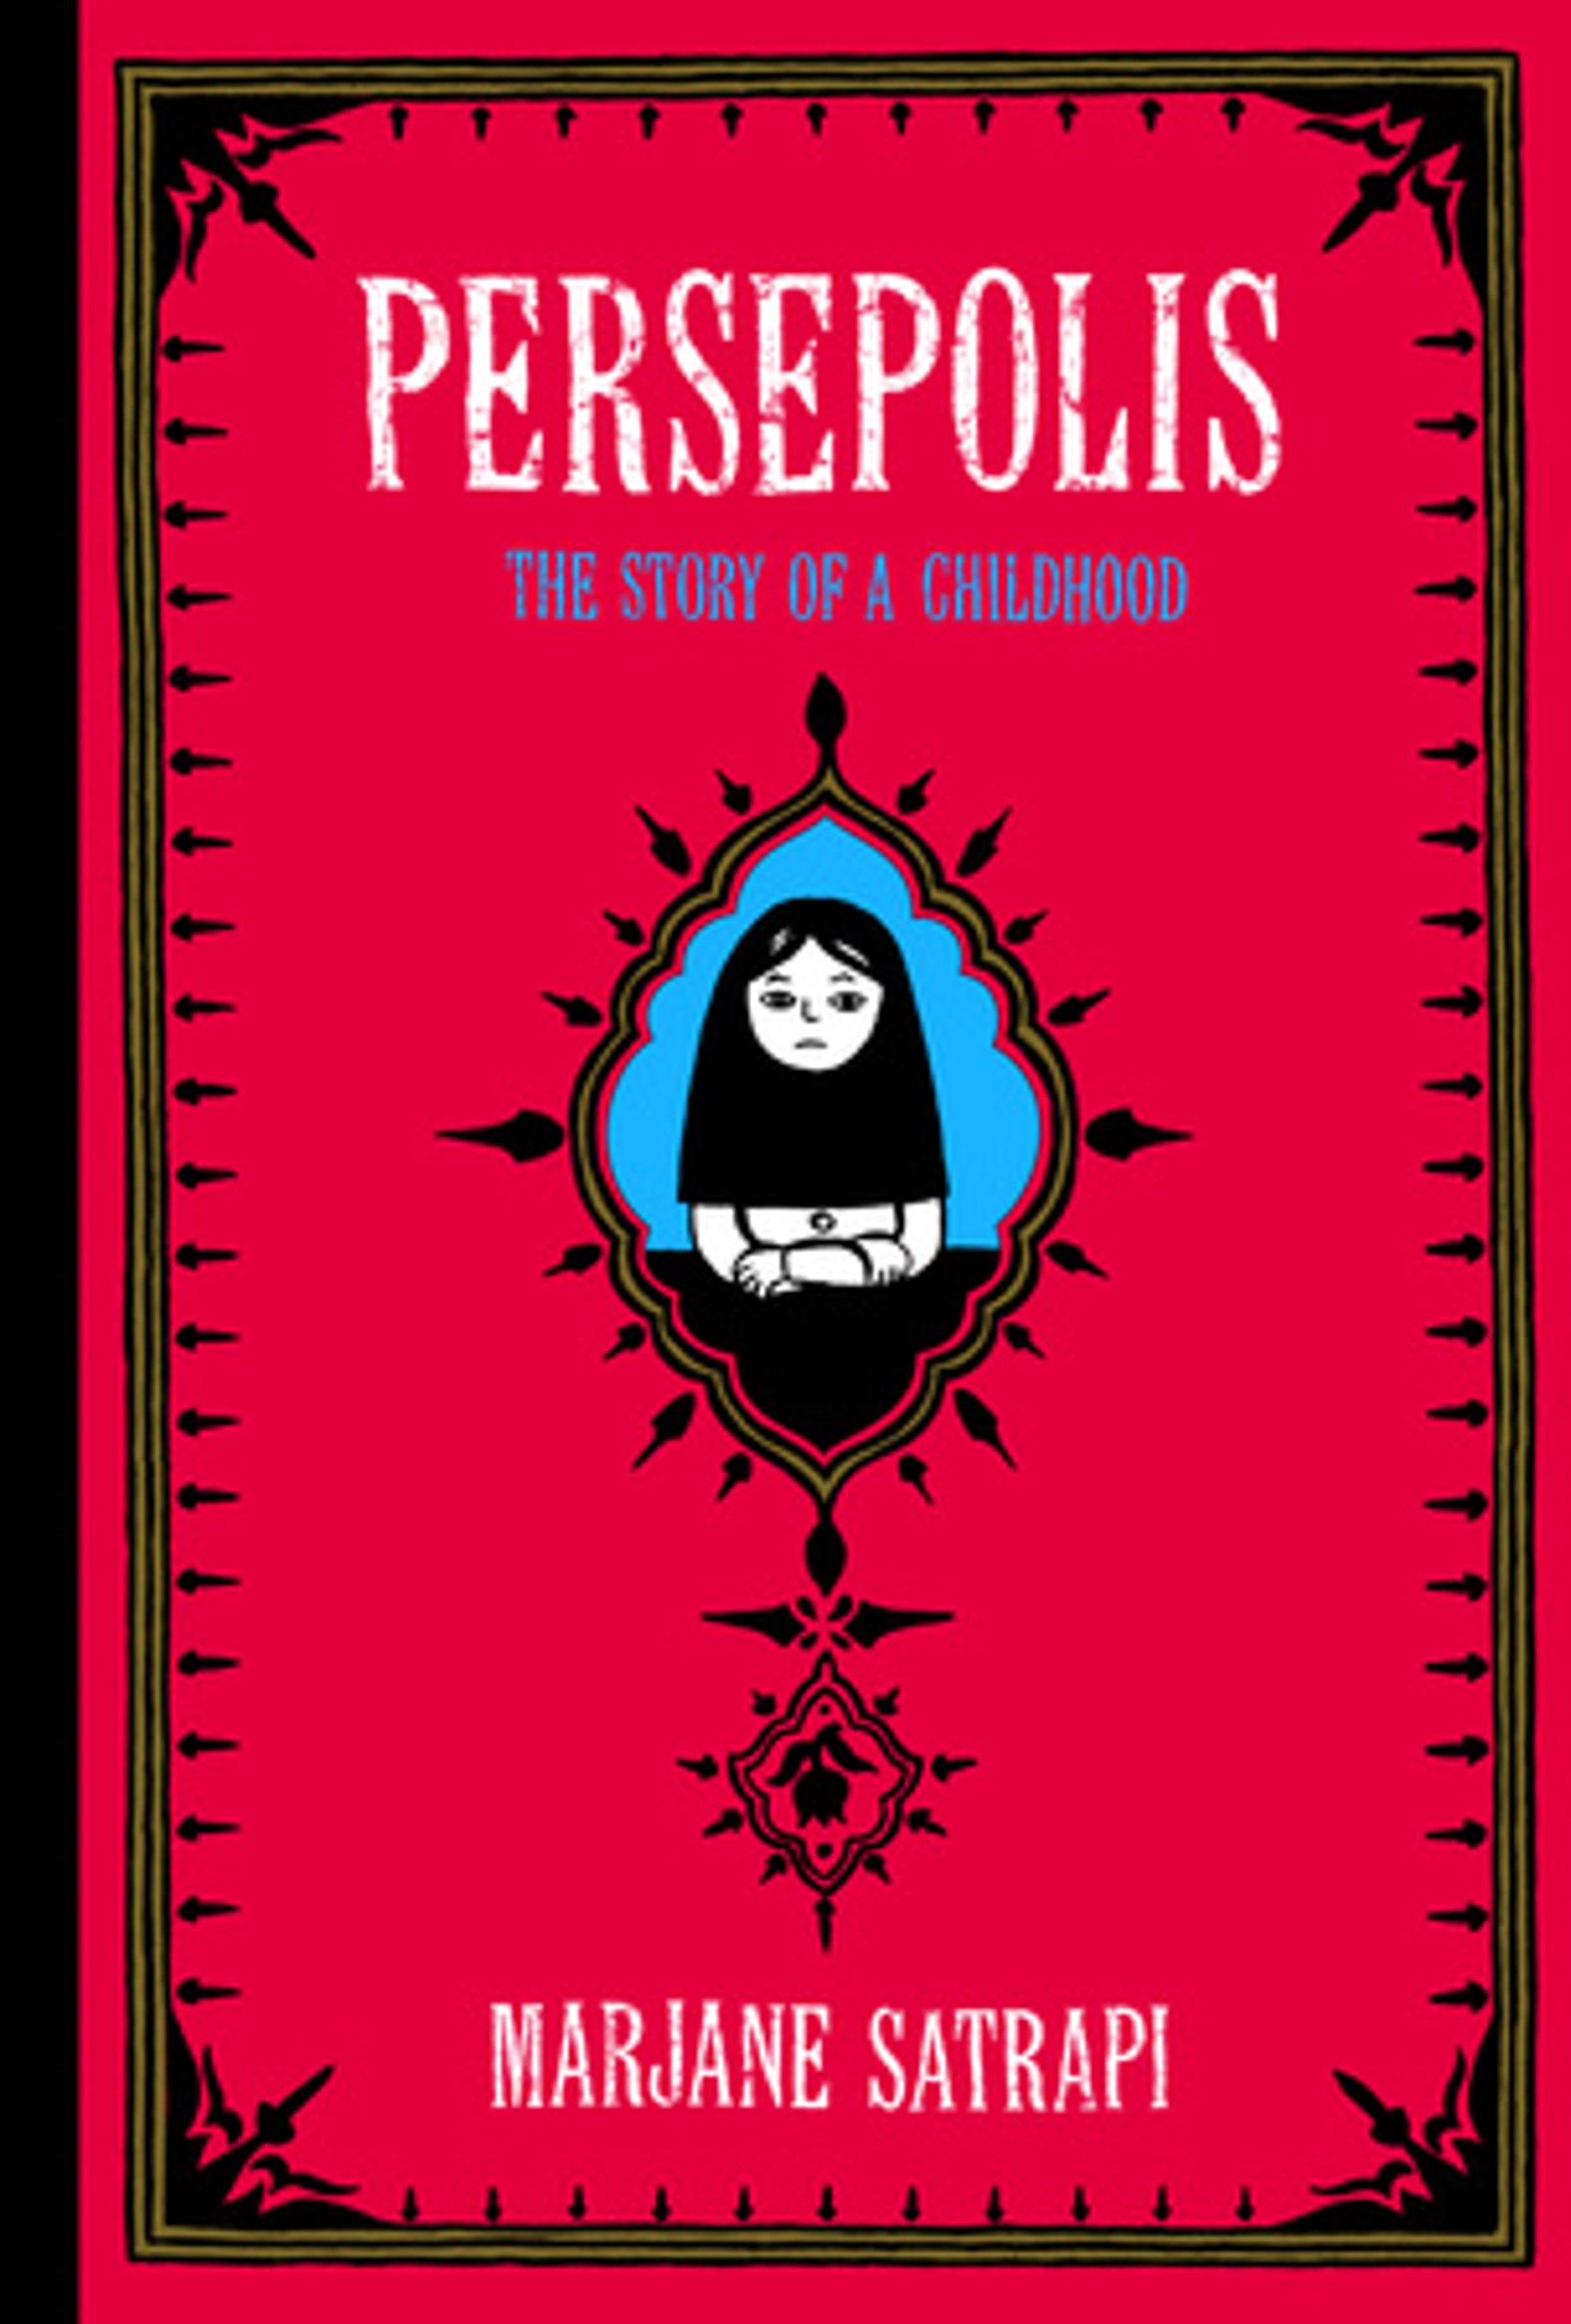 Book cover of Persepolis.